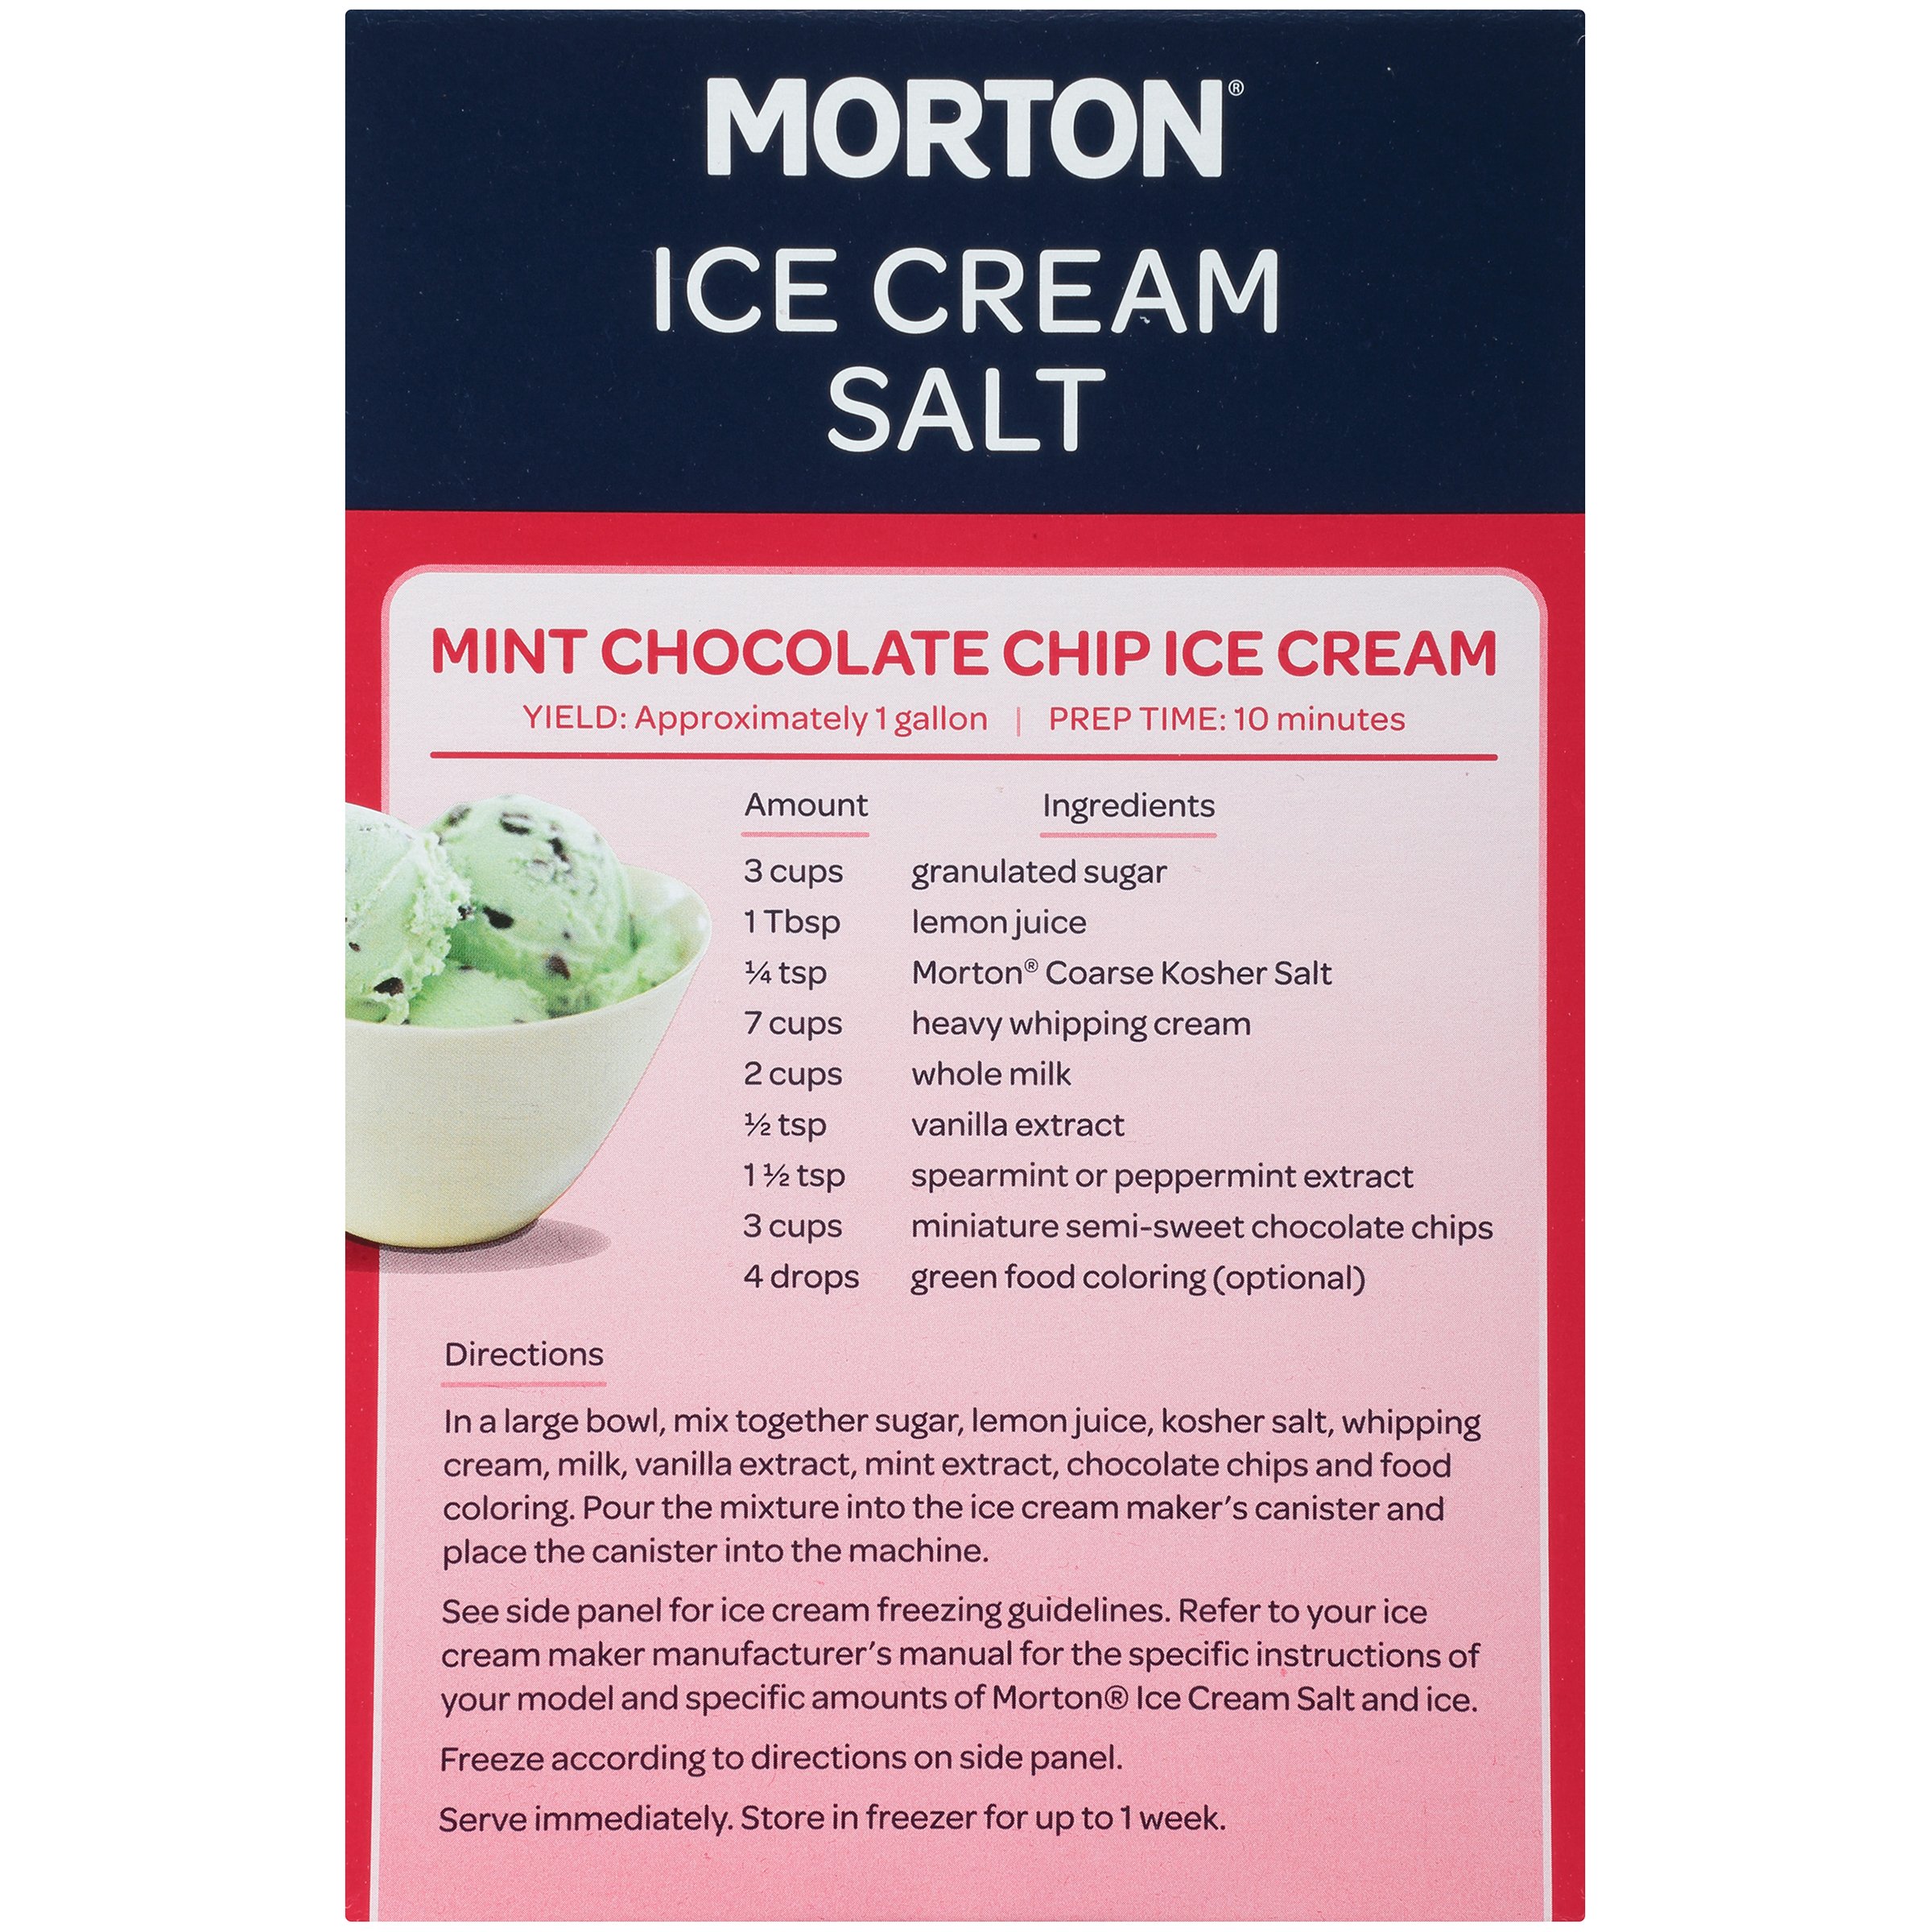 Morton Ice Cream Rock Salt (4 lb) Delivery - DoorDash